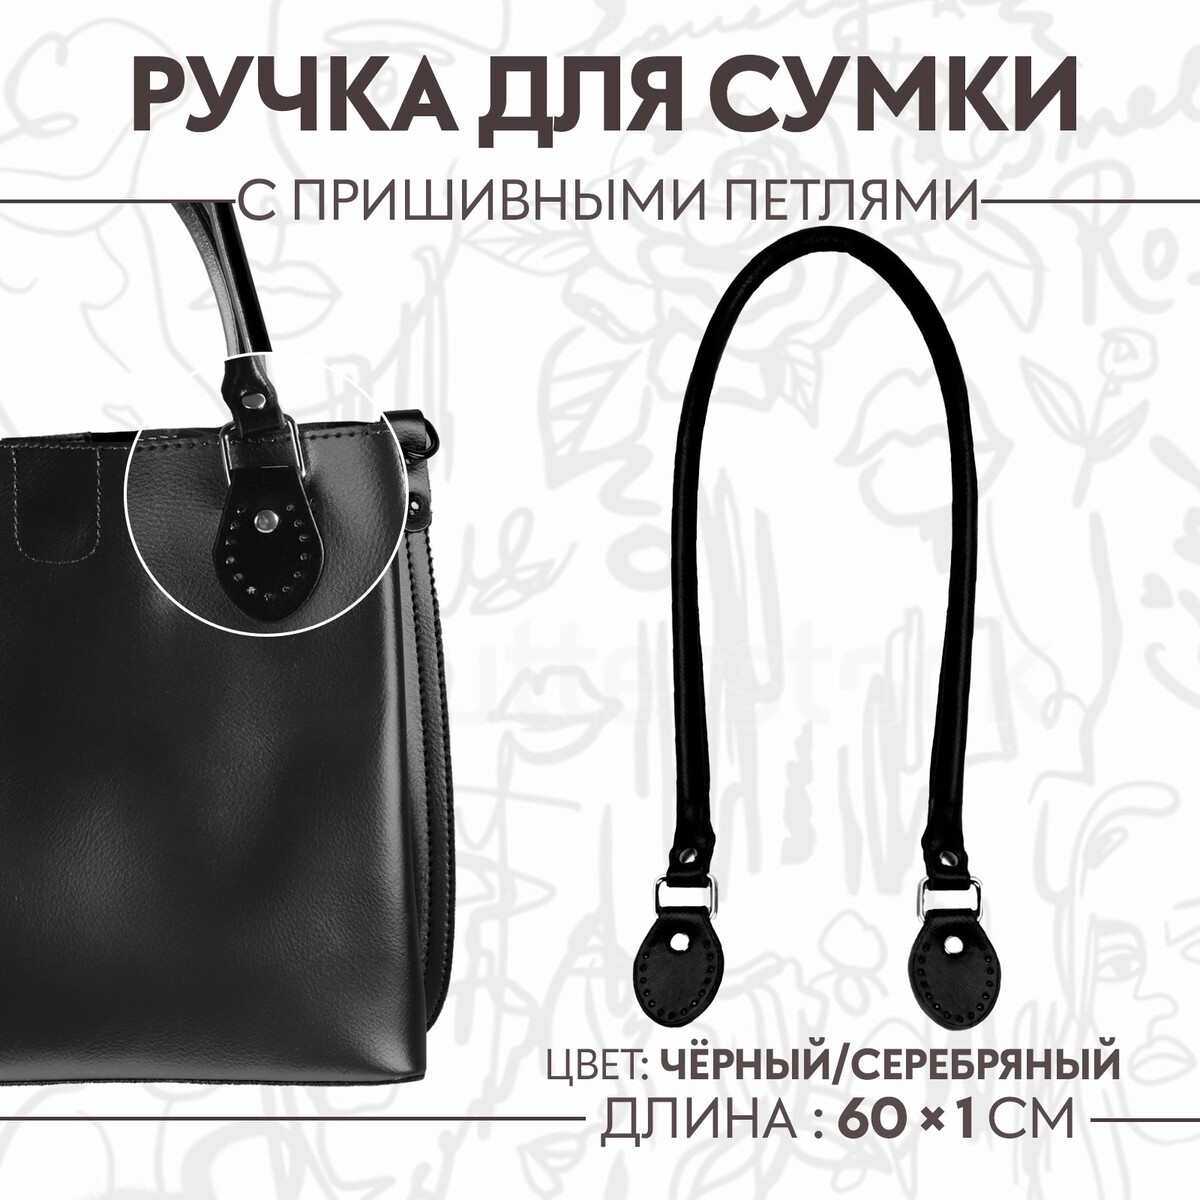 Ручка для сумки, 60 × 1 см, с пришивными петлями 3,5 см, цвет черный/серебряный ручка для сумки 60 × 1 см с пришивными петлями 3 5 см серебряный